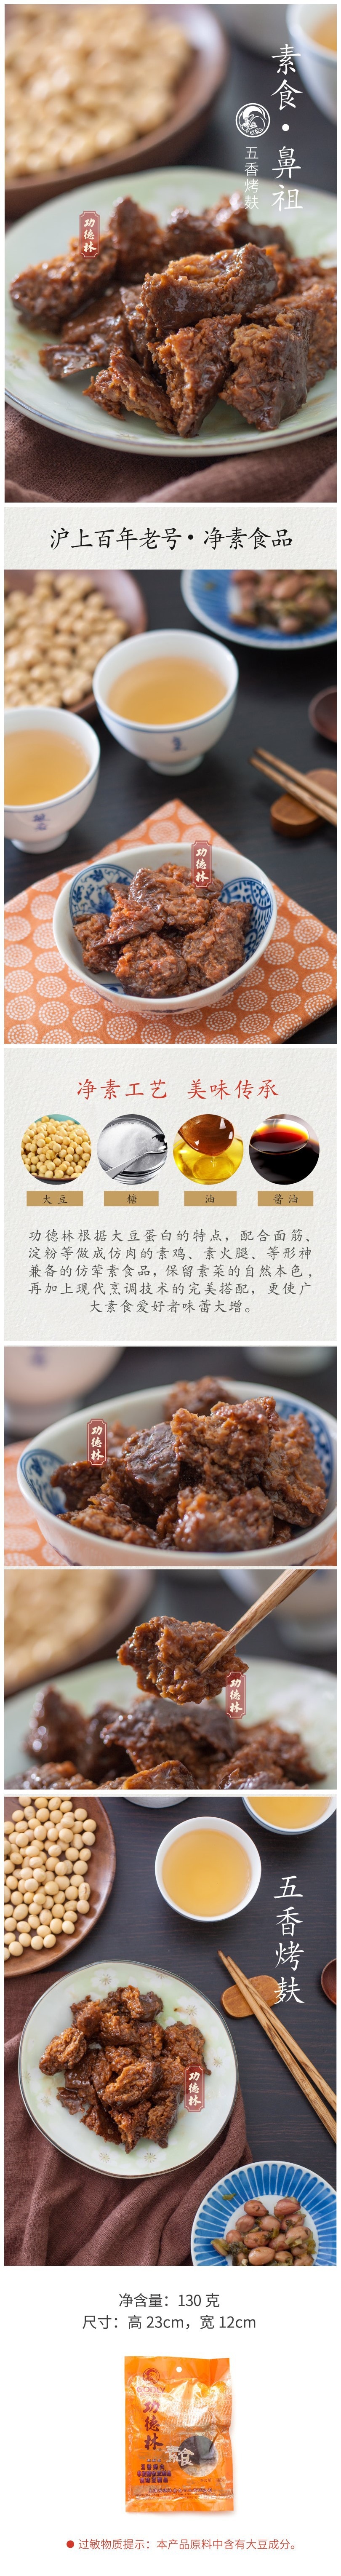 【中国直邮】功德林 素肉 五香烤麸 130gx5袋